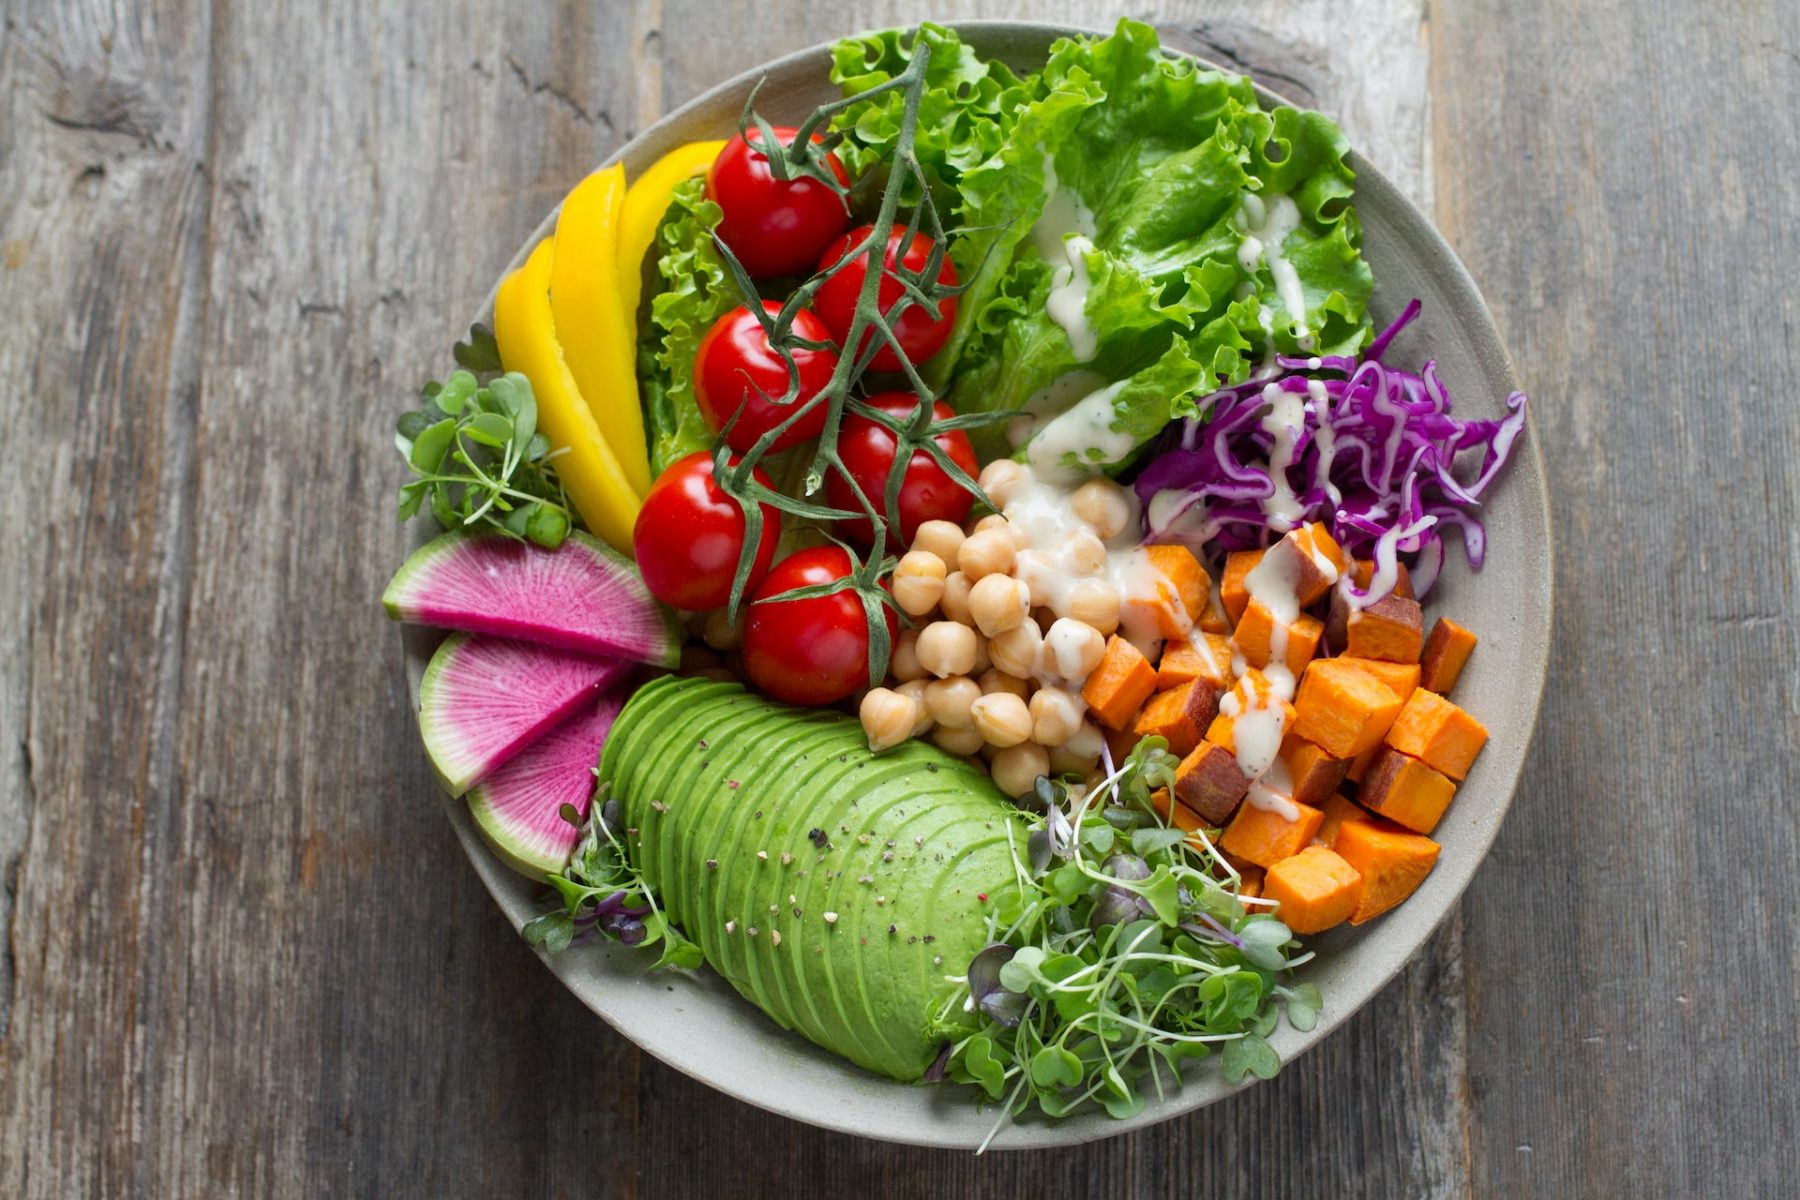 Συνταγές και προετοιμασία: Ιδέες για υγιεινό και ισορροπημένο γεύμα 1 εβδομάδας